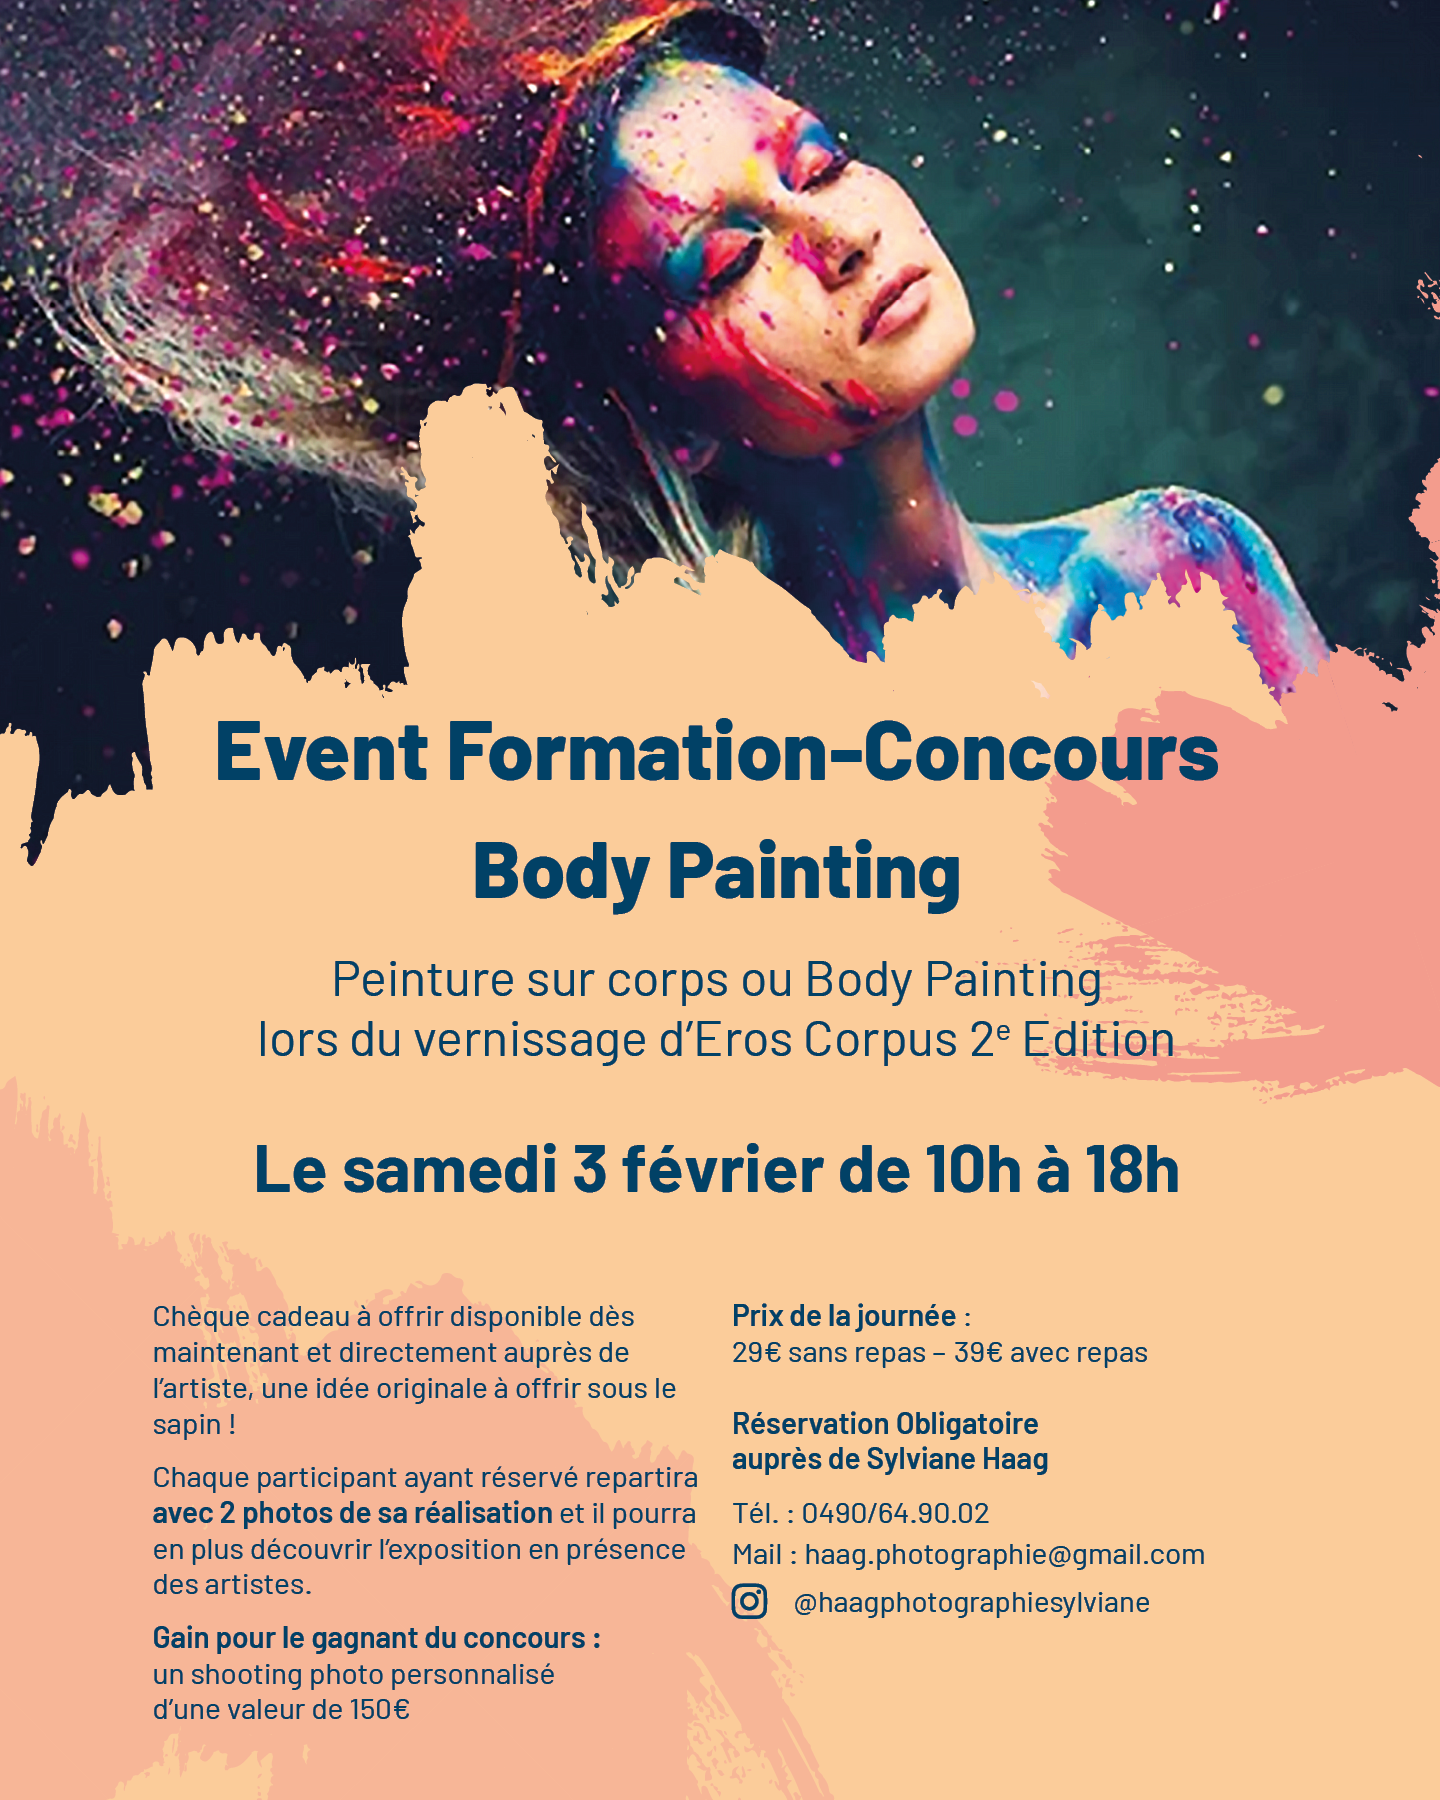 Body Painting à La Galerie Opéra à LIEGE